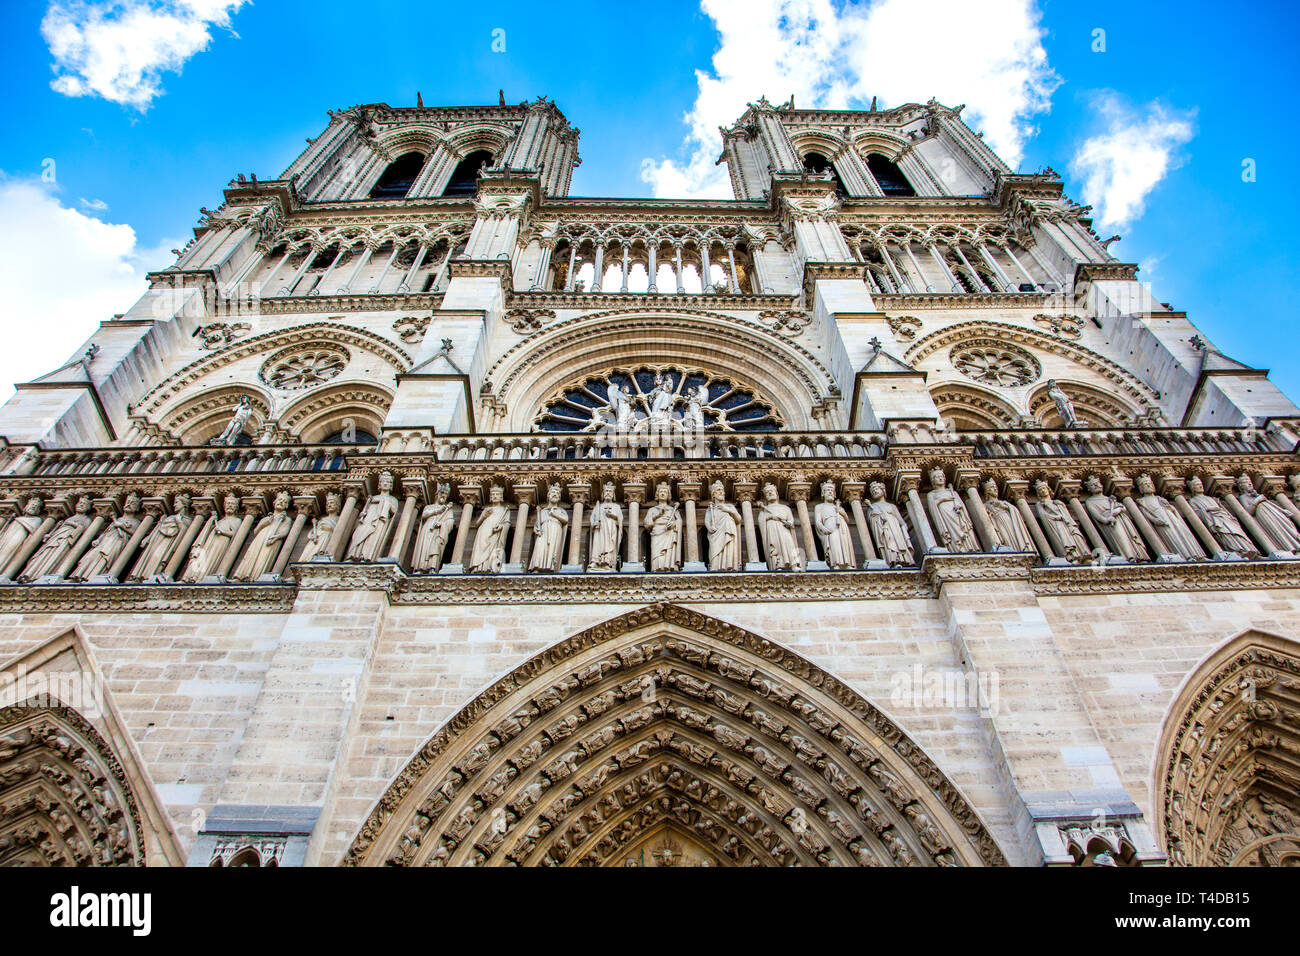 La Cathédrale Notre Dame, Paris, France Banque D'Images